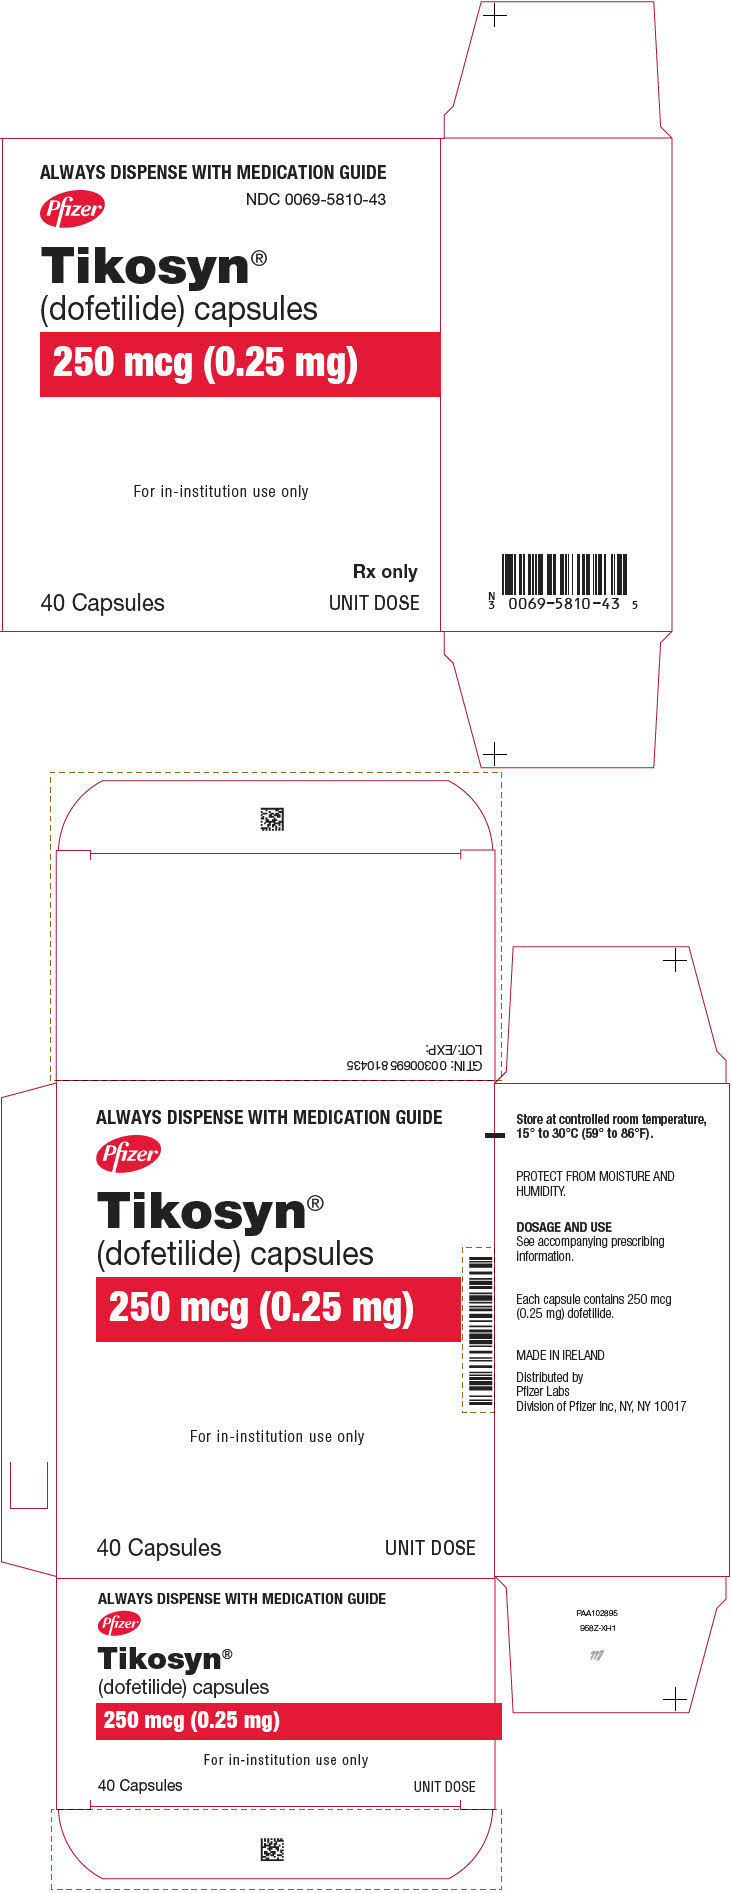 PRINCIPAL DISPLAY PANEL - 0.25 mg Capsule Blister Pack Carton